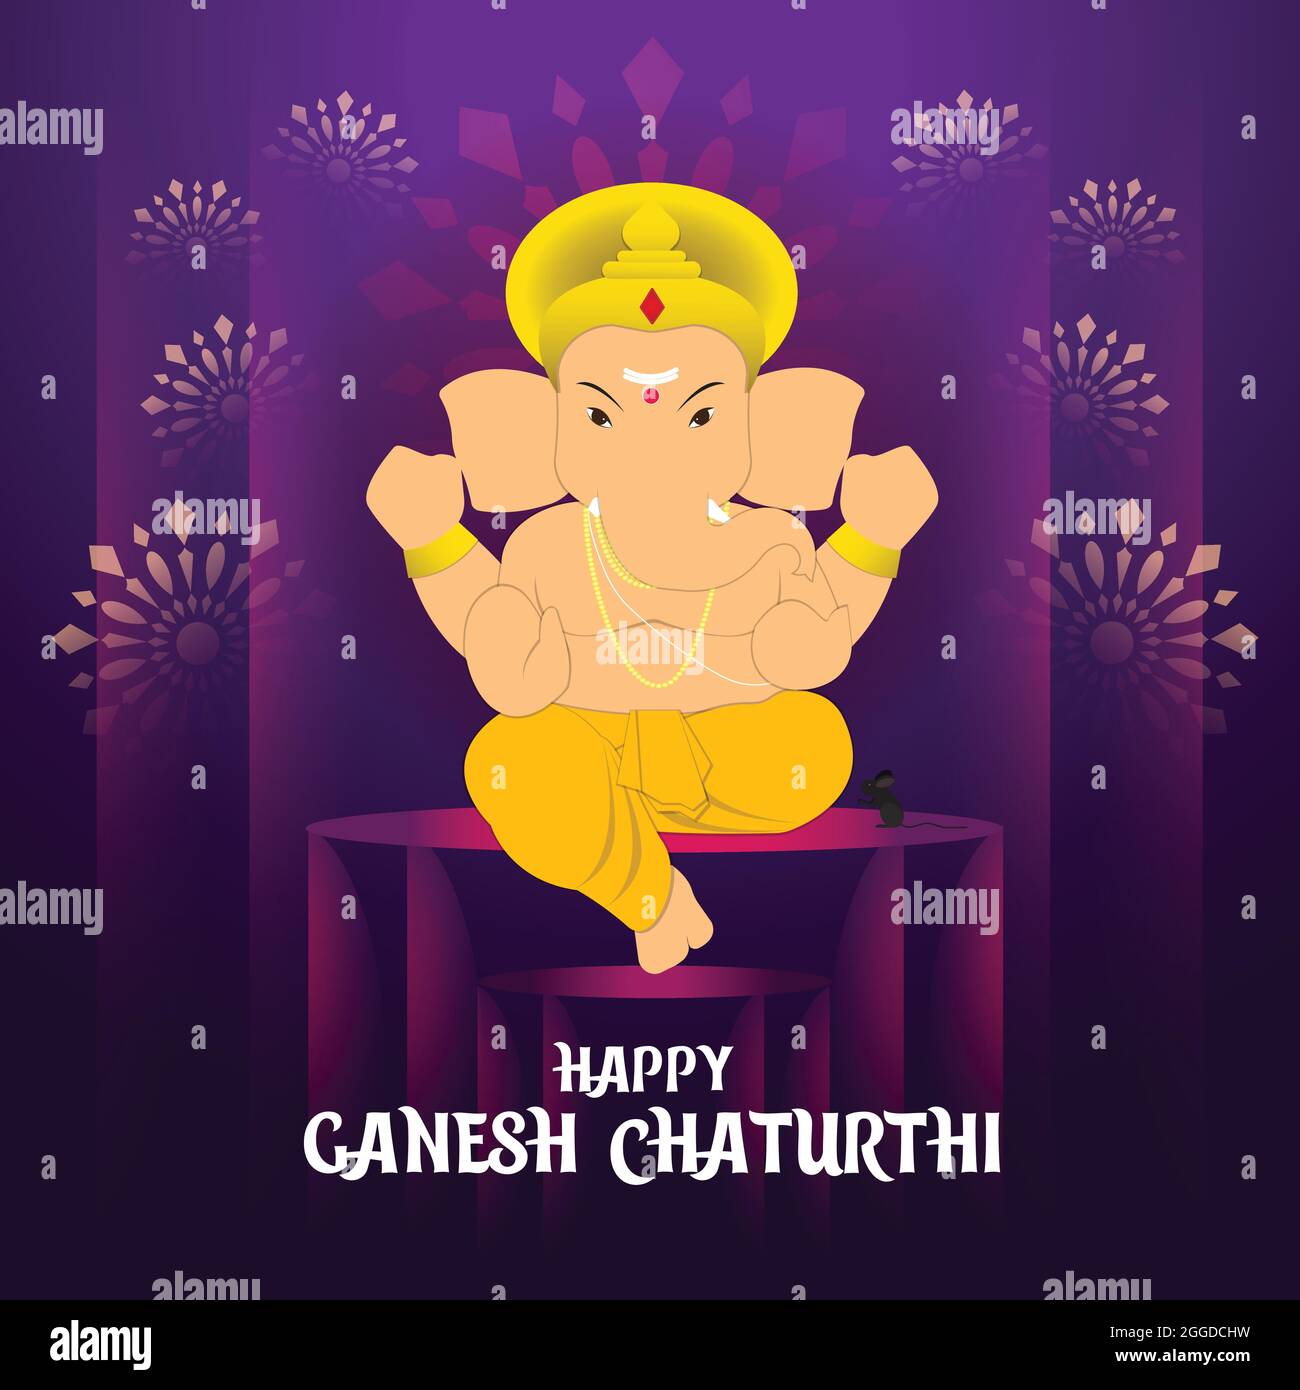 Illustrazione di Happy Ganesh Chaturthi. Sfondo di colore viola per il festival Ganesh Chaturthi Illustrazione Vettoriale